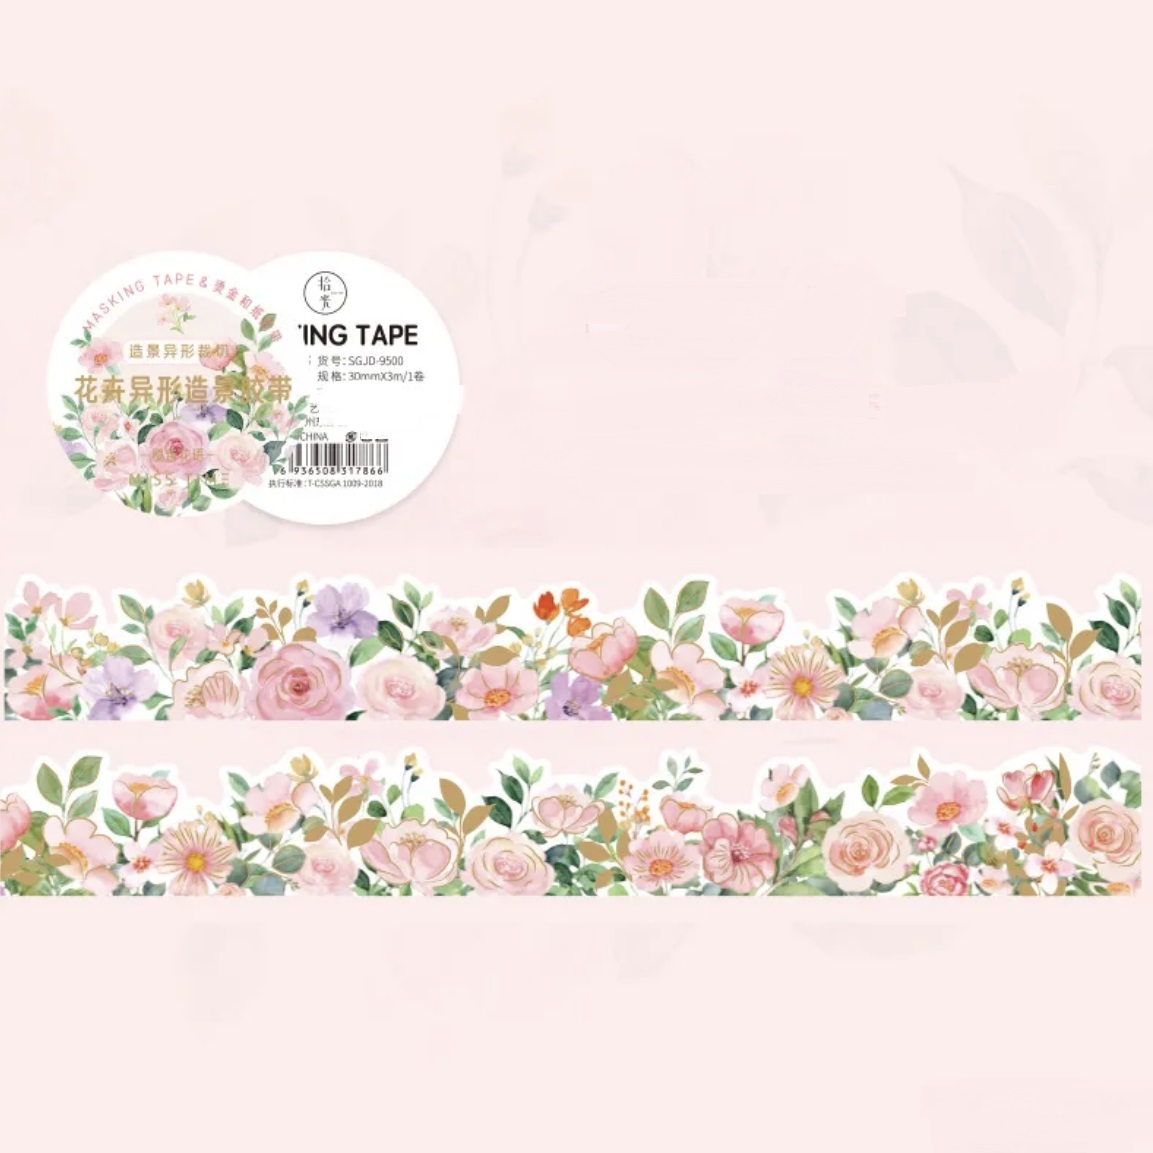 【特別注文】0070356 ロール 春シリーズ風景の花